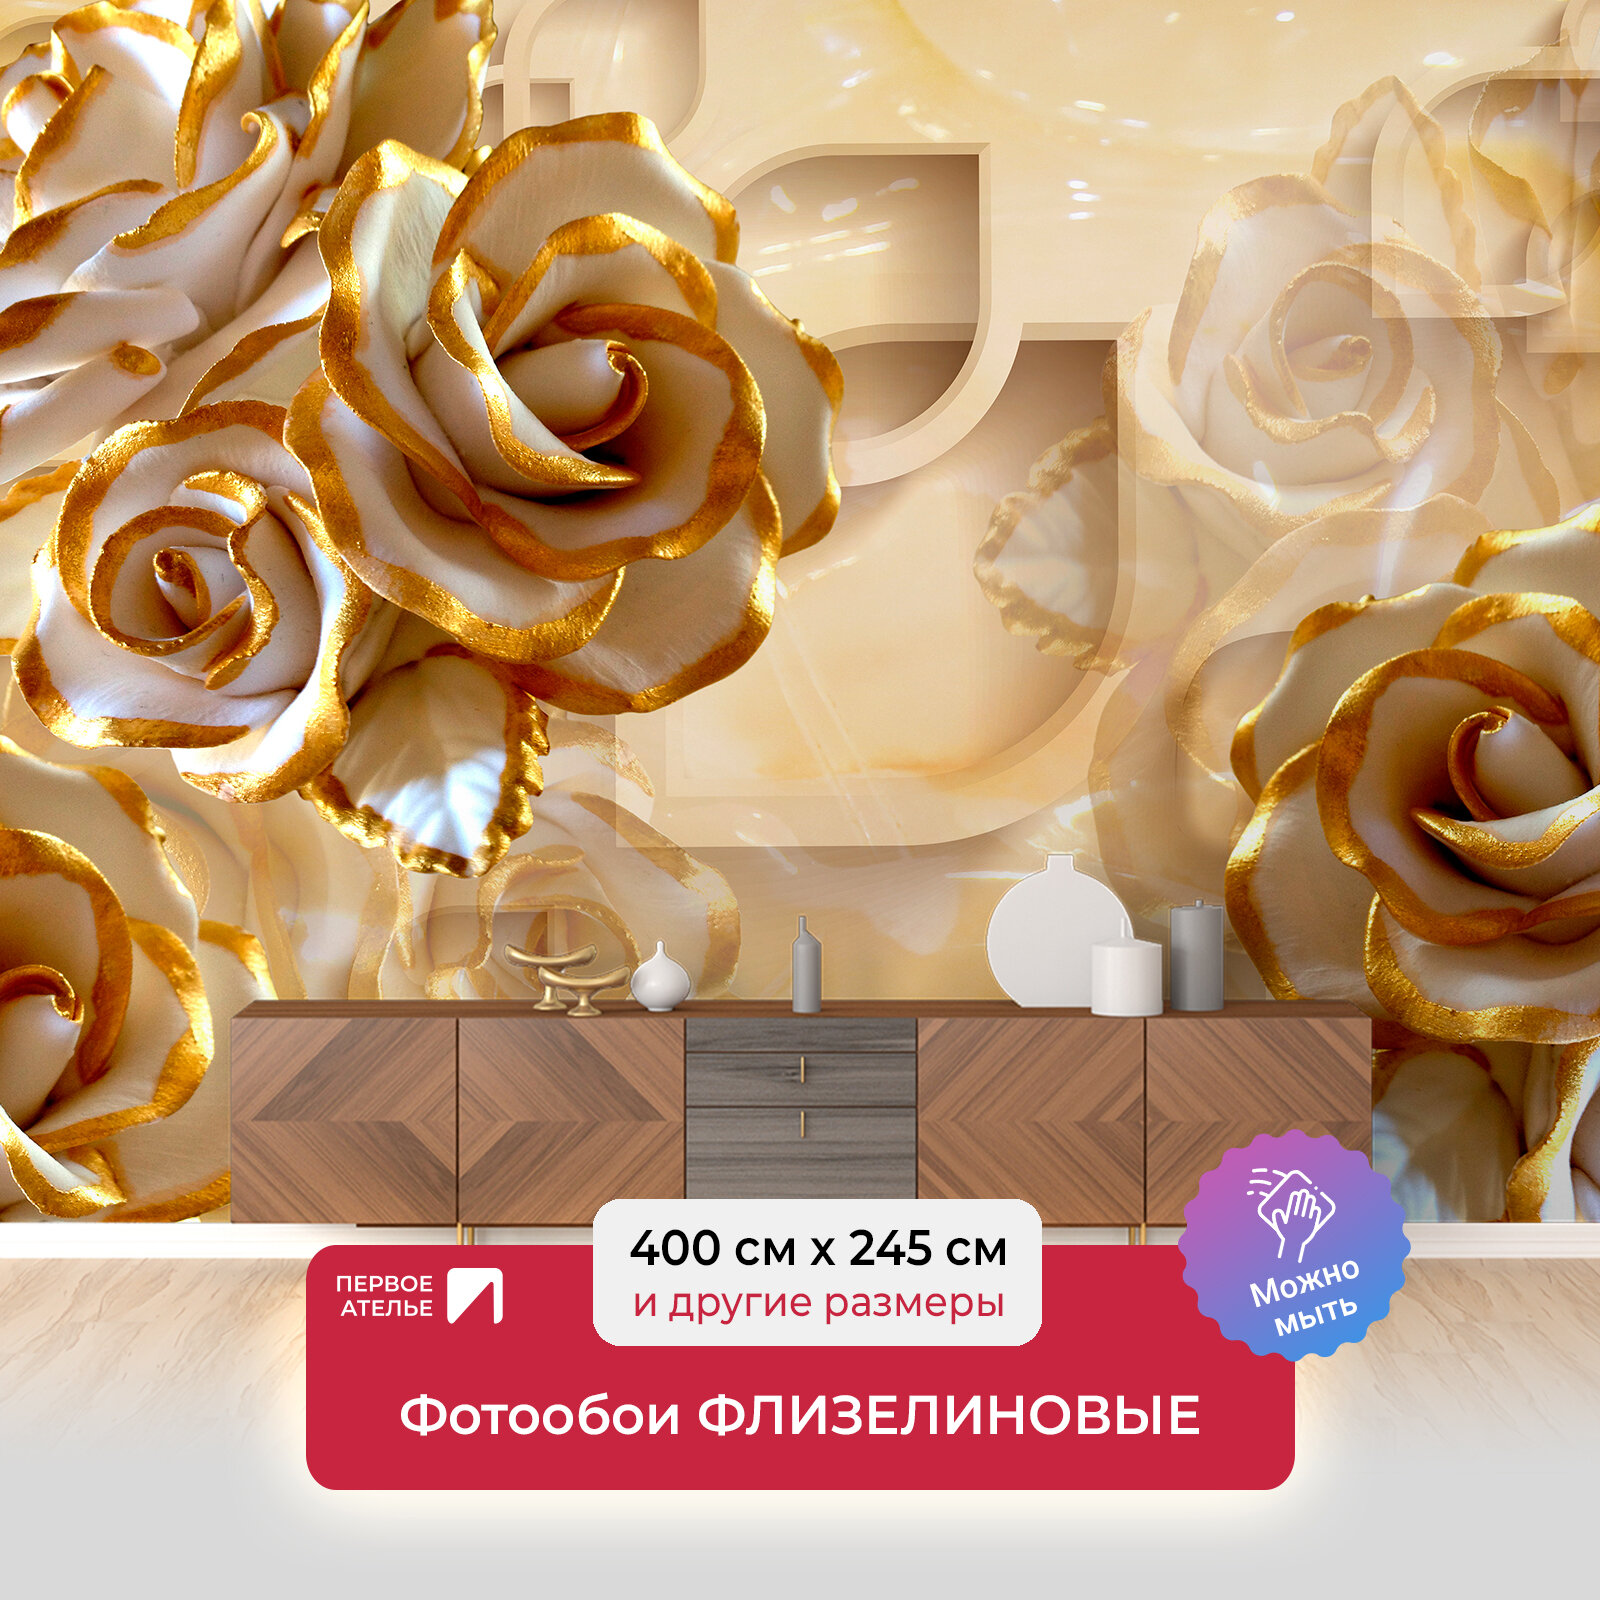 Фотообои на стену первое ателье "Объемные розы с позолоченными лепестками" 400х245 см (ШхВ), флизелиновые Premium